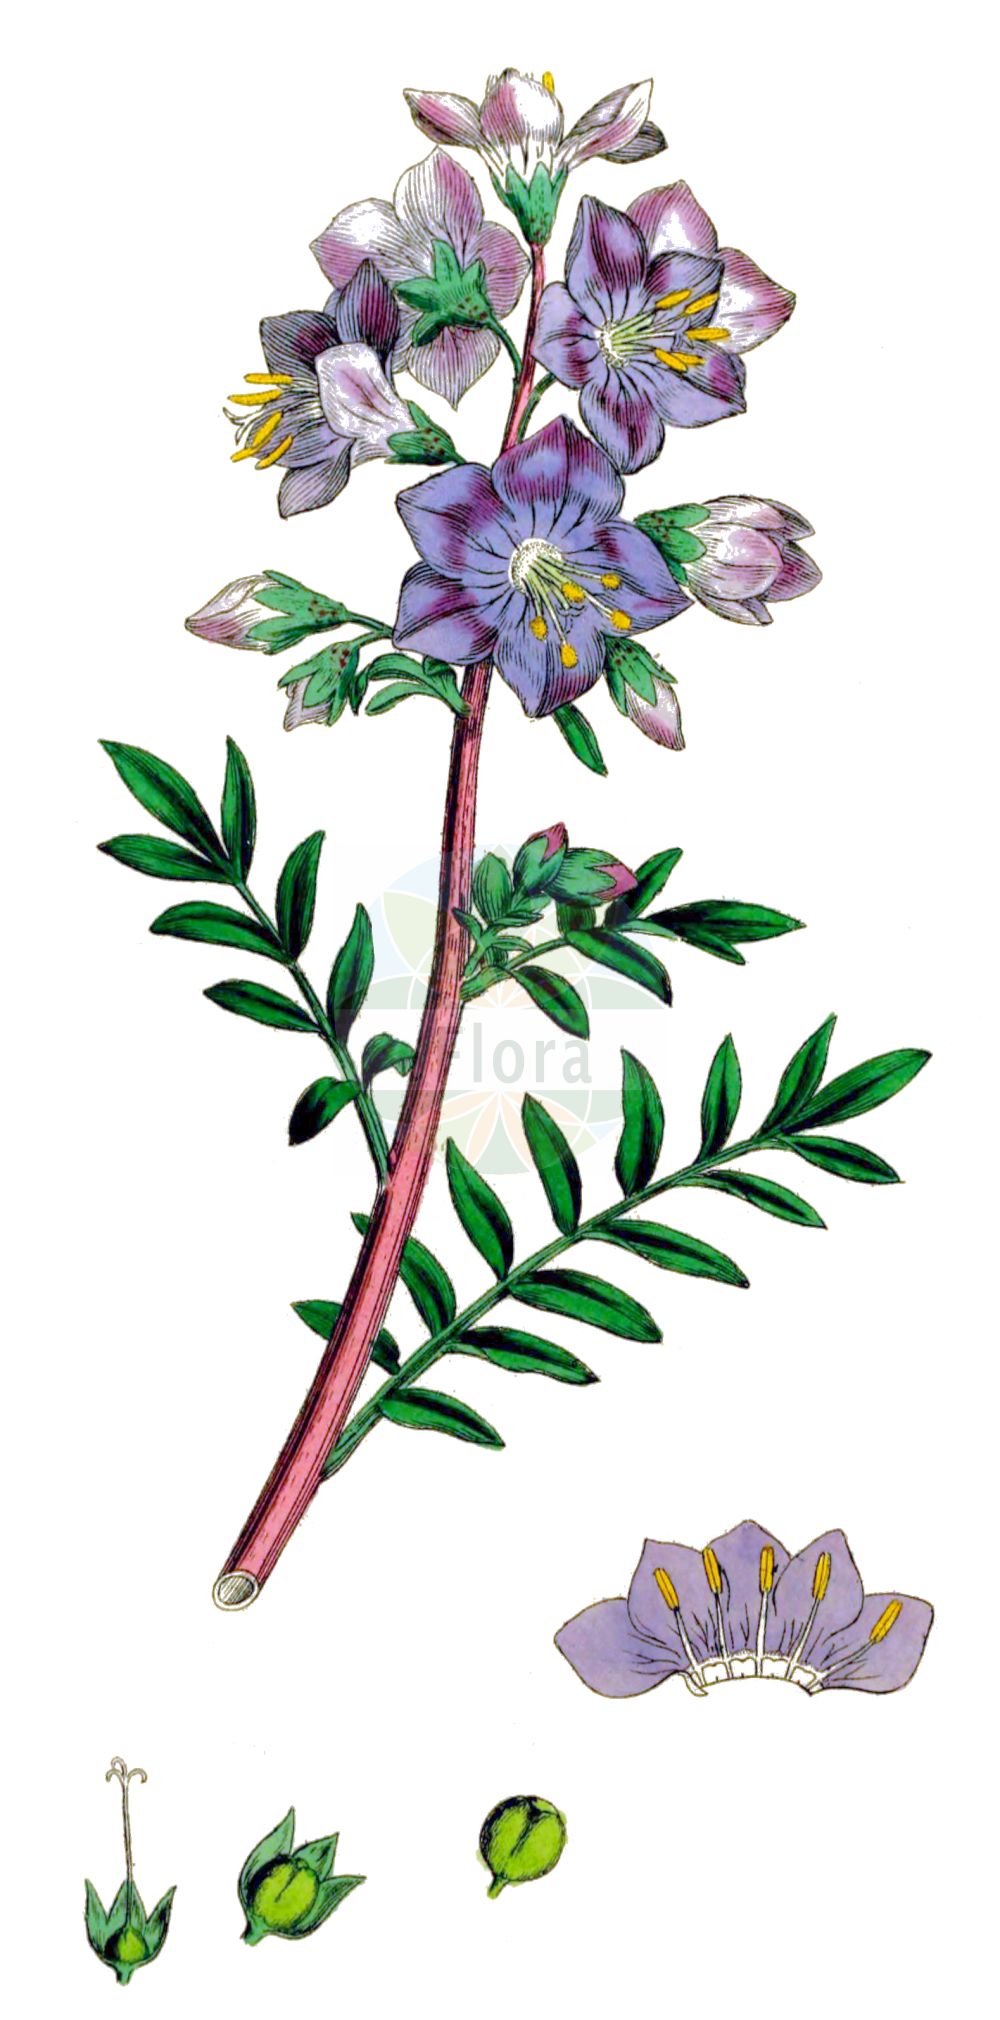 Historische Abbildung von Polemonium caeruleum (Blaue Himmelsleiter - Jacob's-ladder). Das Bild zeigt Blatt, Bluete, Frucht und Same. ---- Historical Drawing of Polemonium caeruleum (Blaue Himmelsleiter - Jacob's-ladder). The image is showing leaf, flower, fruit and seed.(Polemonium caeruleum,Blaue Himmelsleiter,Jacob's-ladder,Polemonium caeruleum,Polemonium caucasicum,Blaue Himmelsleiter,Blaues Sperrkraut,Jacob's-ladder,Blue Jacob's Ladder,Charity,Tall Jacob's-ladder,Polemonium,Himmelsleiter,Jacob's-ladder,Polemoniaceae,Himmelsleitergewächse,Phlox family,Blatt,Bluete,Frucht,Same,leaf,flower,fruit,seed,Sowerby (1790-1813))